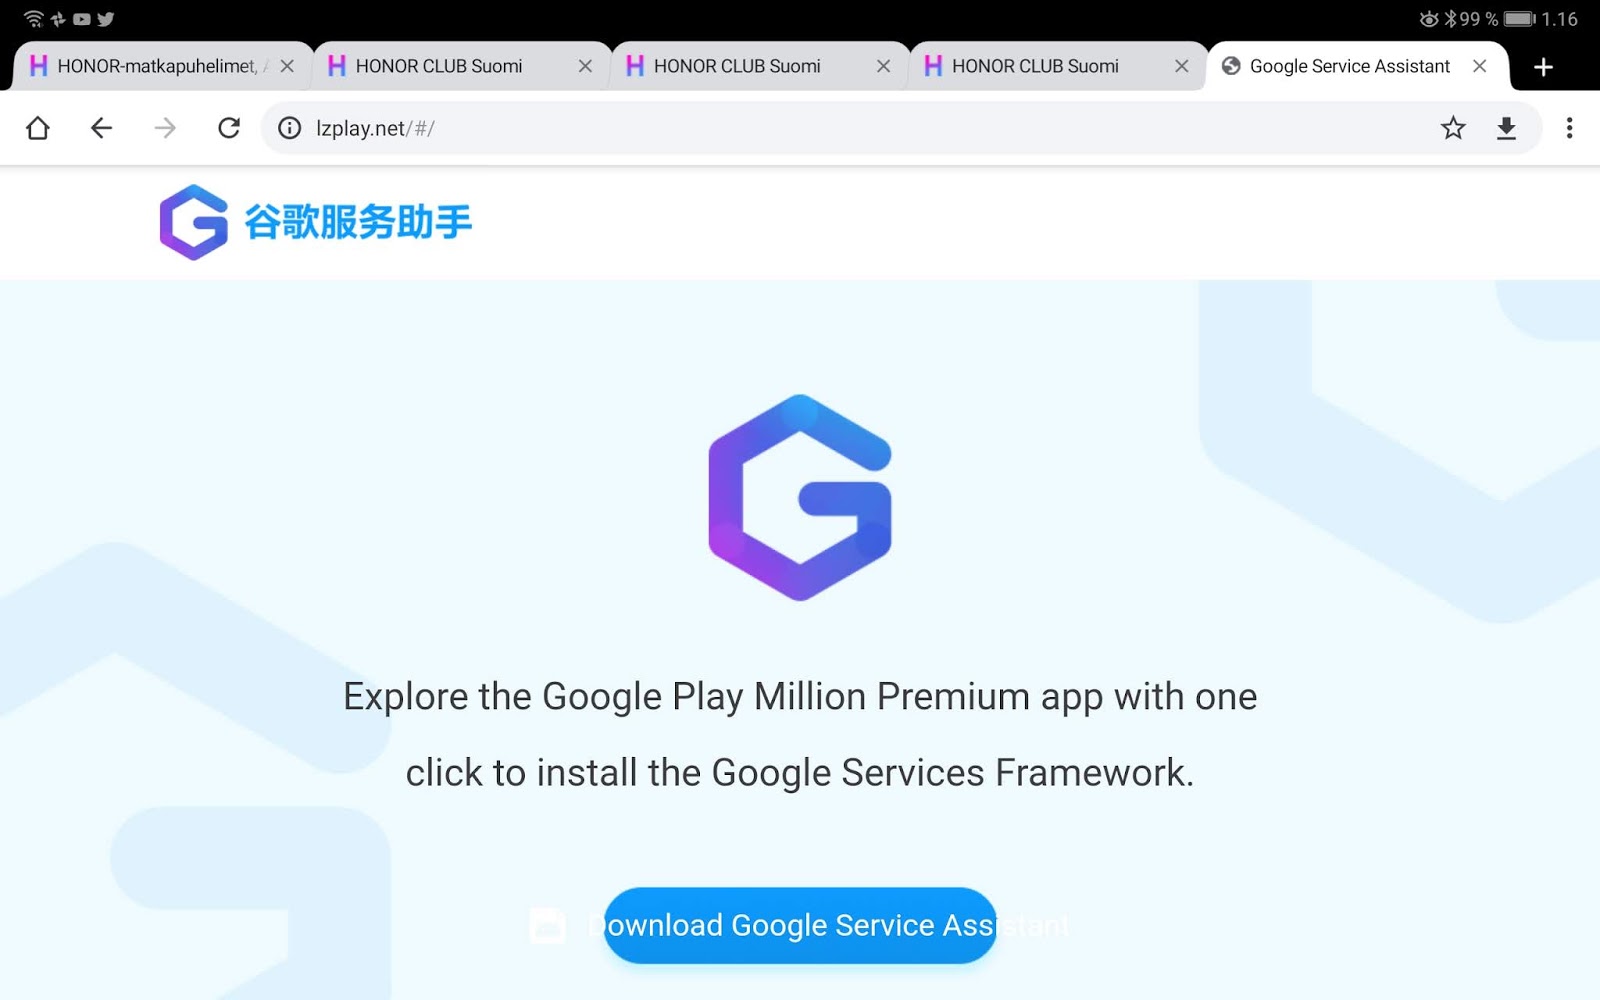 Como instalar a Play Store e os serviços do Google no Huawei